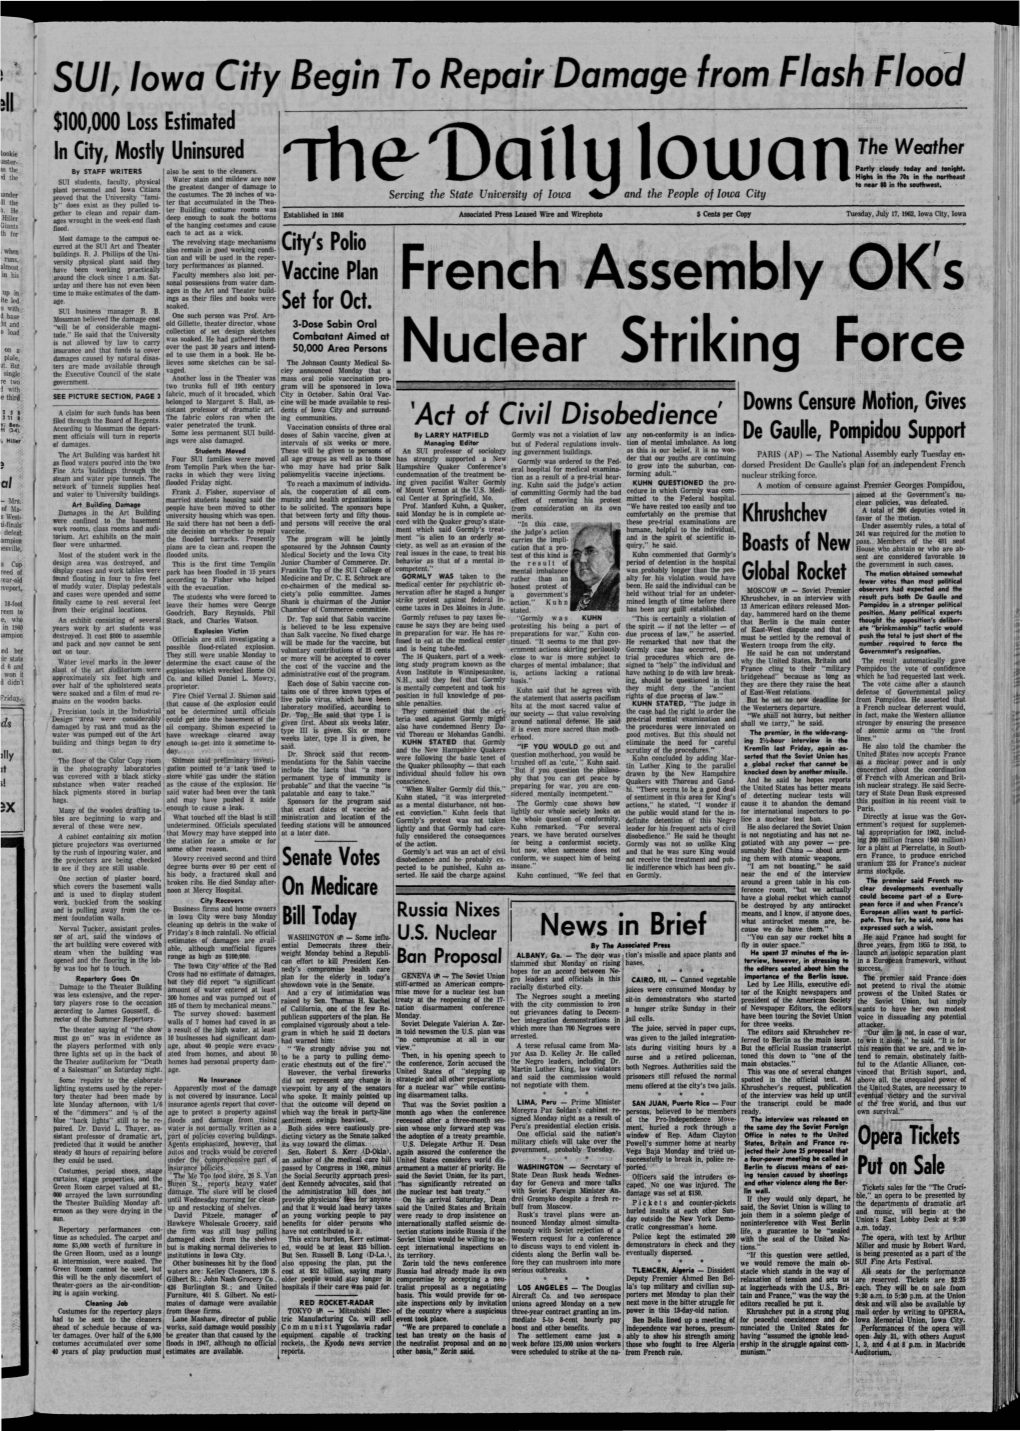 Daily Iowan (Iowa City, Iowa), 1962-07-17